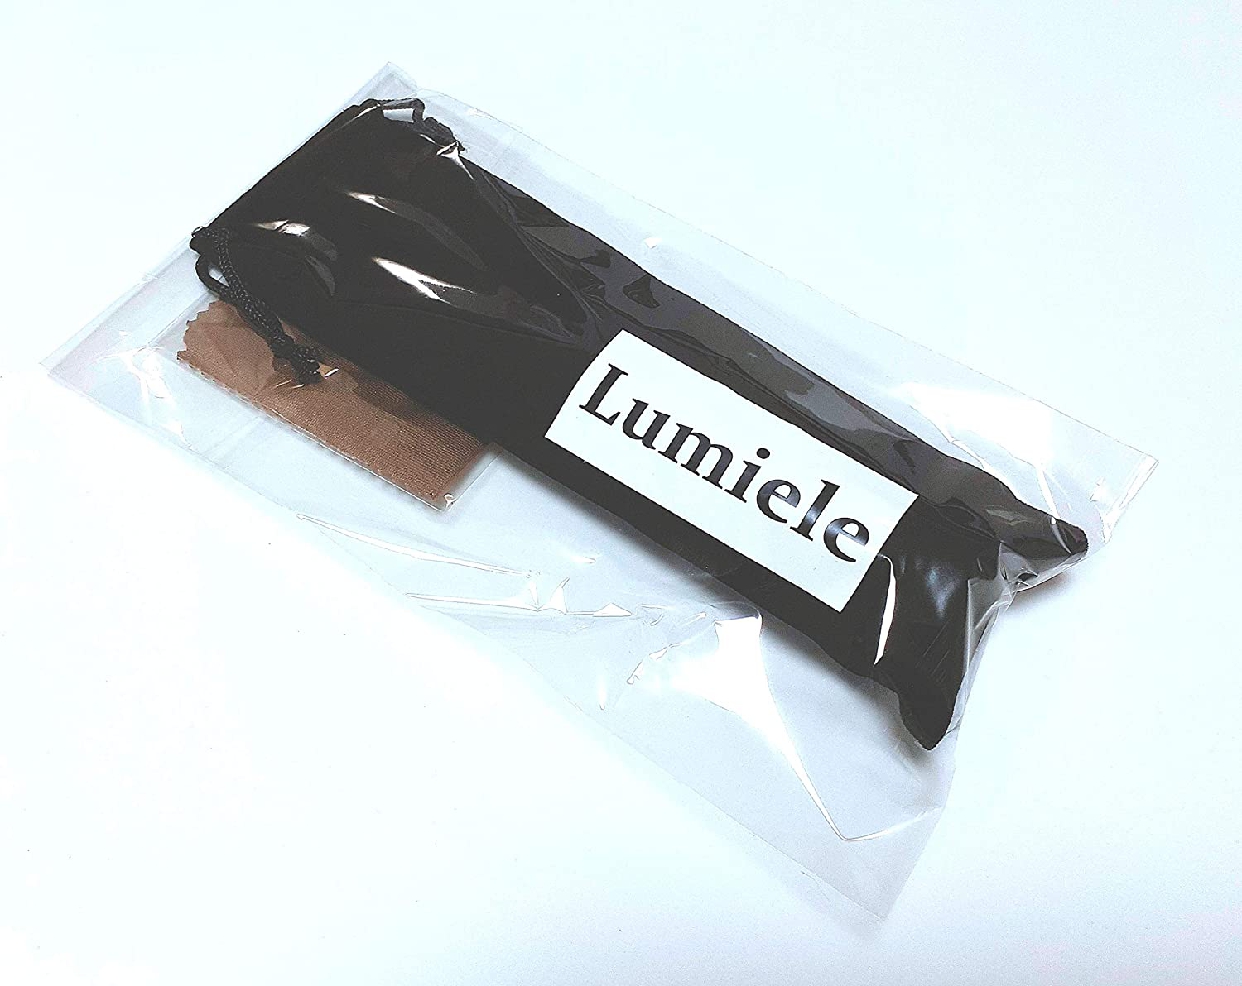 Lumiele(ルミエール) かっさ棒 天然 水牛の角 リンパマッサージ ツボ押し専用ケース袋付きの商品画像サムネ6 